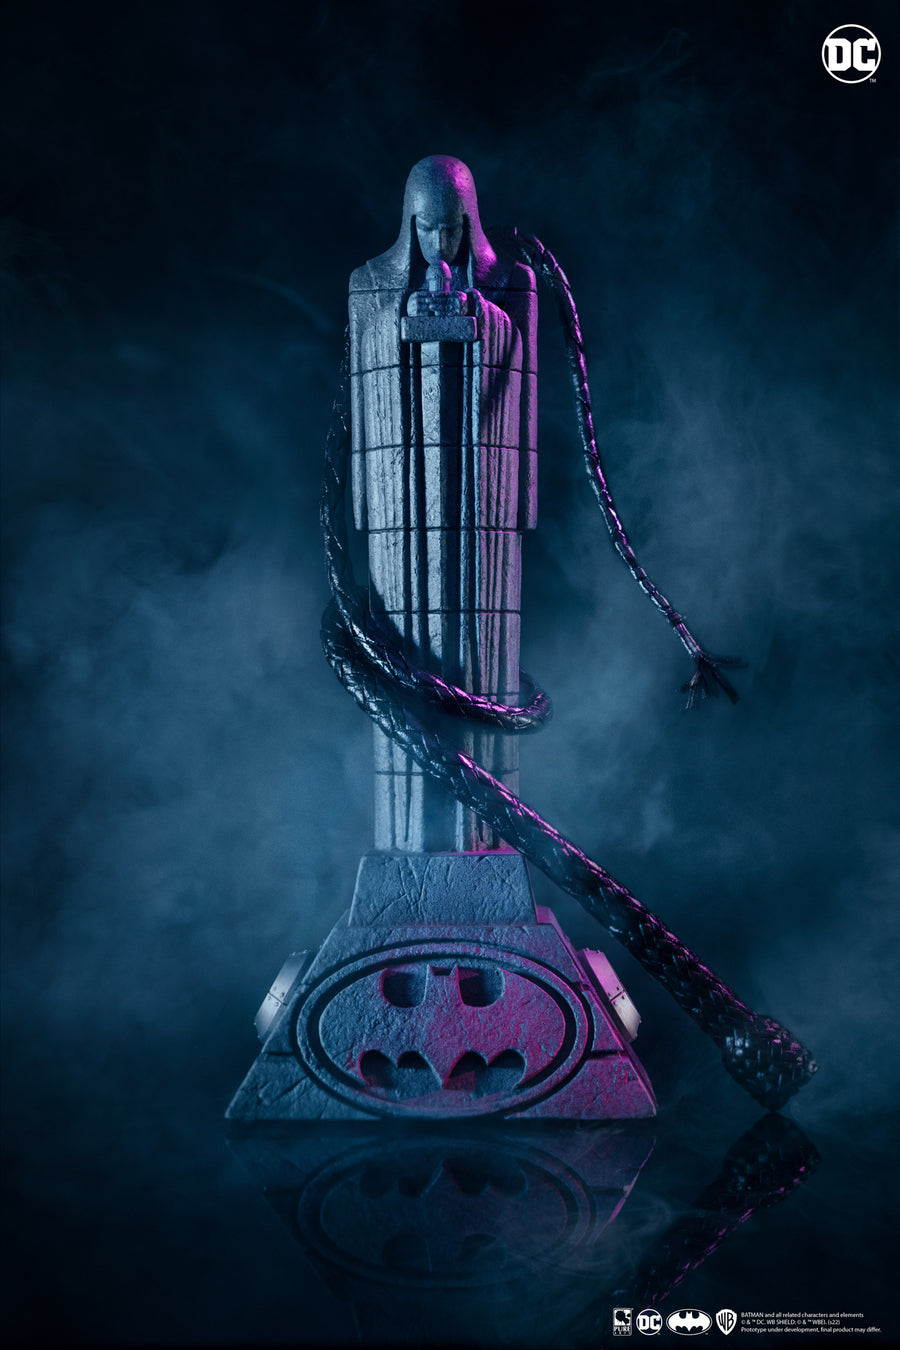 Batman Returns Catwoman Mask Replica à l'échelle 1:1 édition exclusive